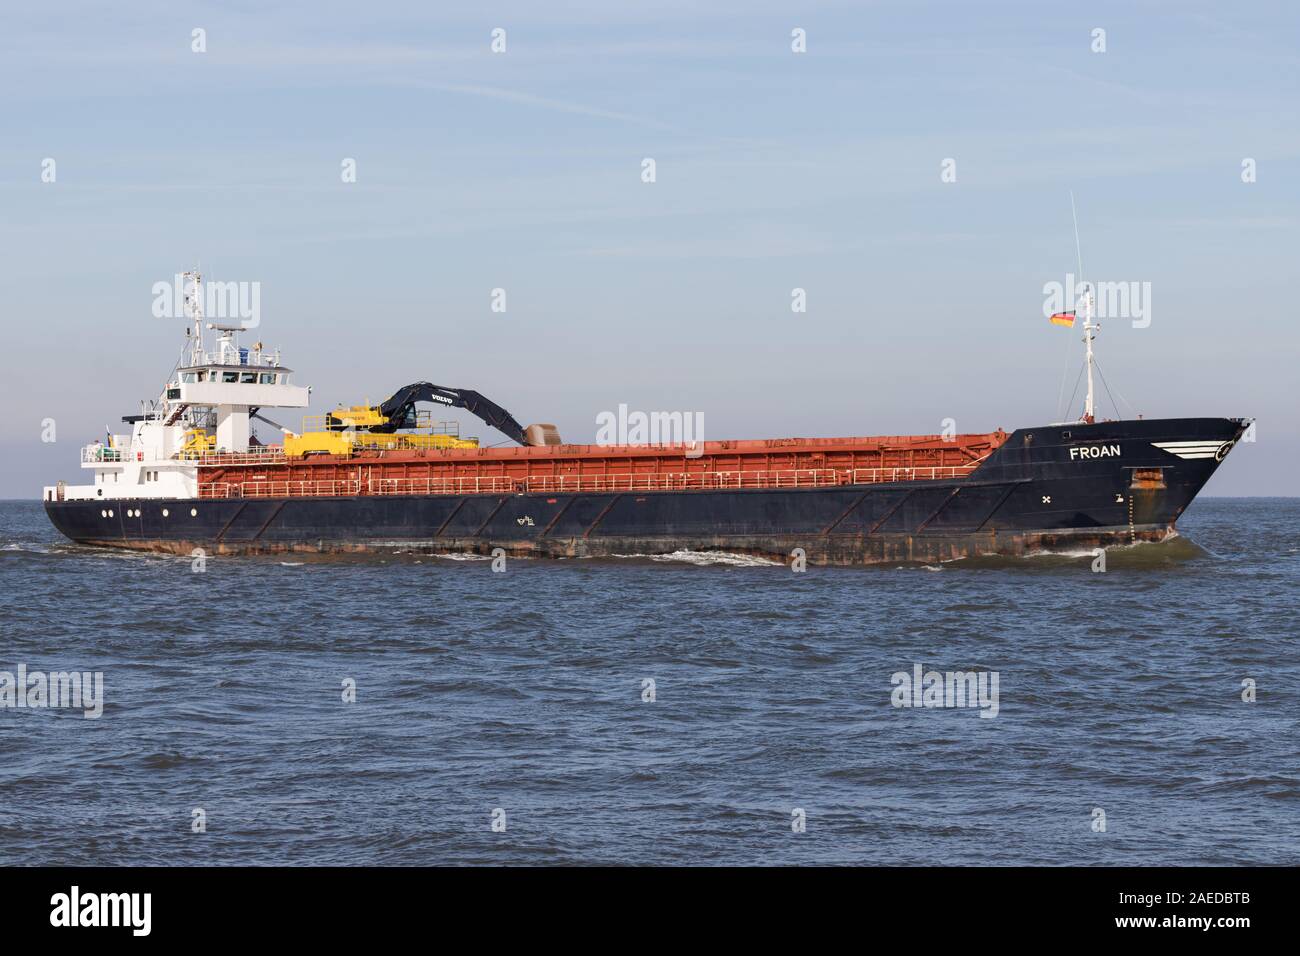 Berge Rederi selfdischarging general cargo vessel FROAN on the river Elbe. Stock Photo